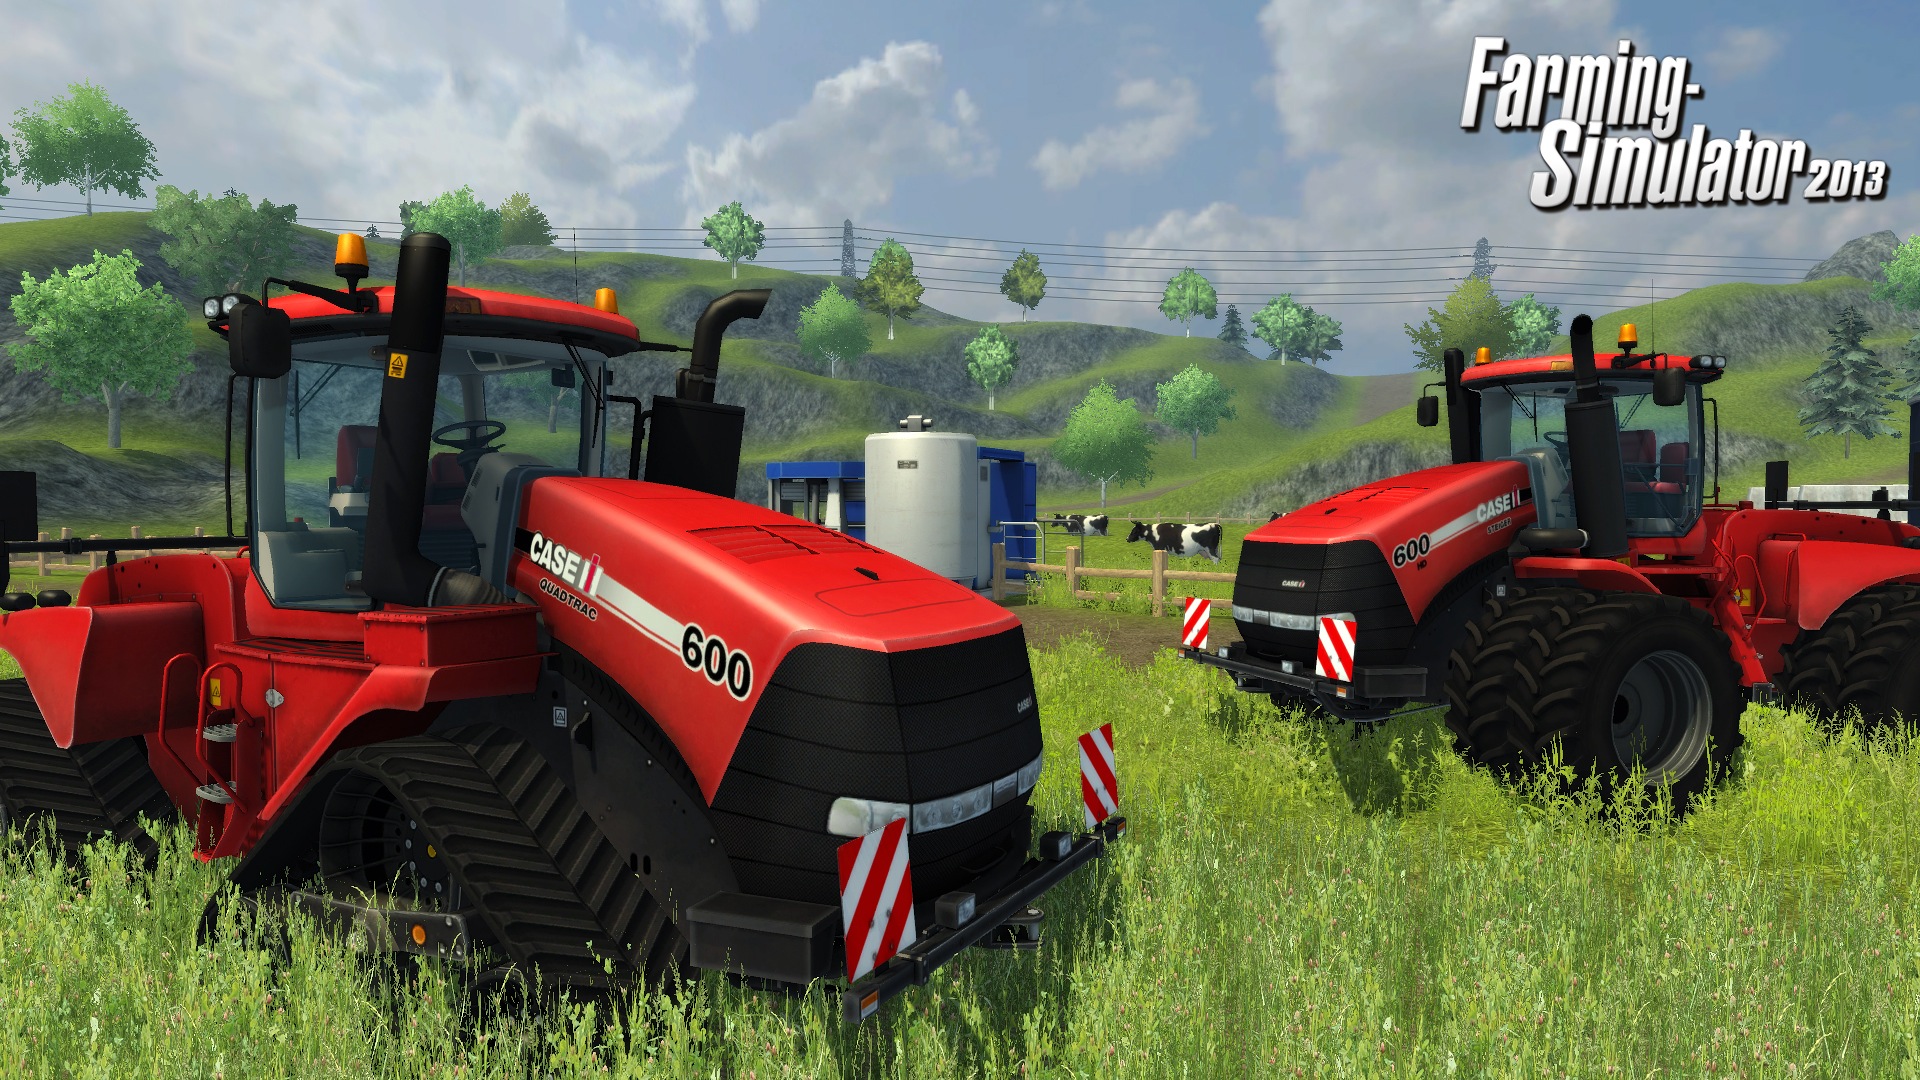 Landwirtschafts Simulator 2013 Release Termin Und Details News 8132